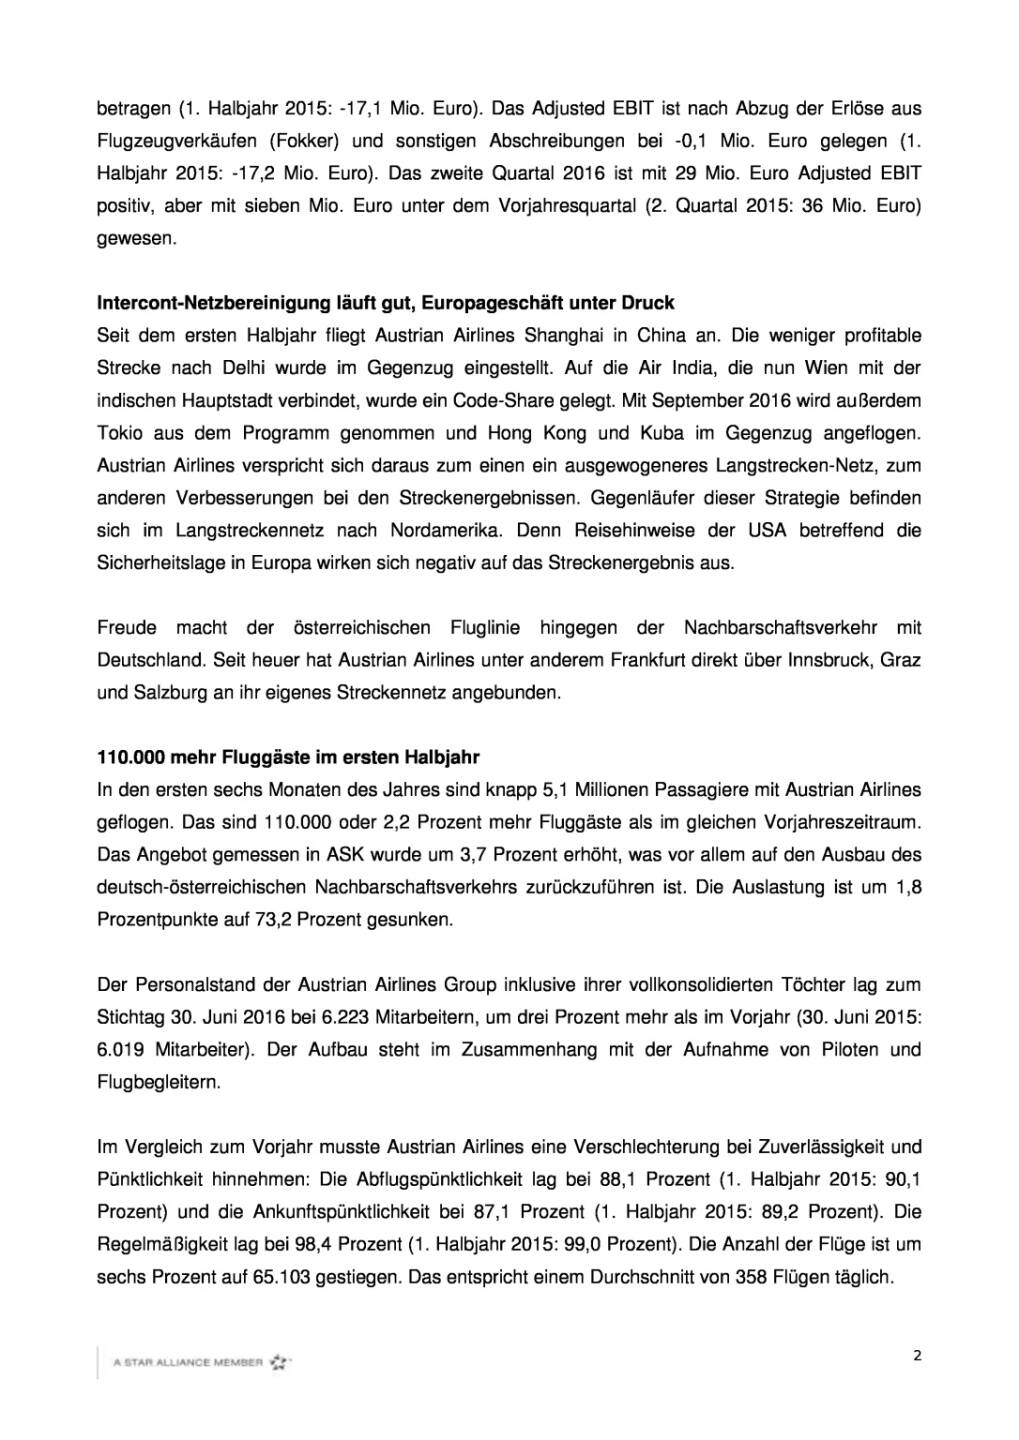 Austrian Airlines: Finanzergebnis 1. Halbjahr 2016, Seite 2/4, komplettes Dokument unter http://boerse-social.com/static/uploads/file_1543_austrian_airlines_finanzergebnis_1_halbjahr_2016.pdf